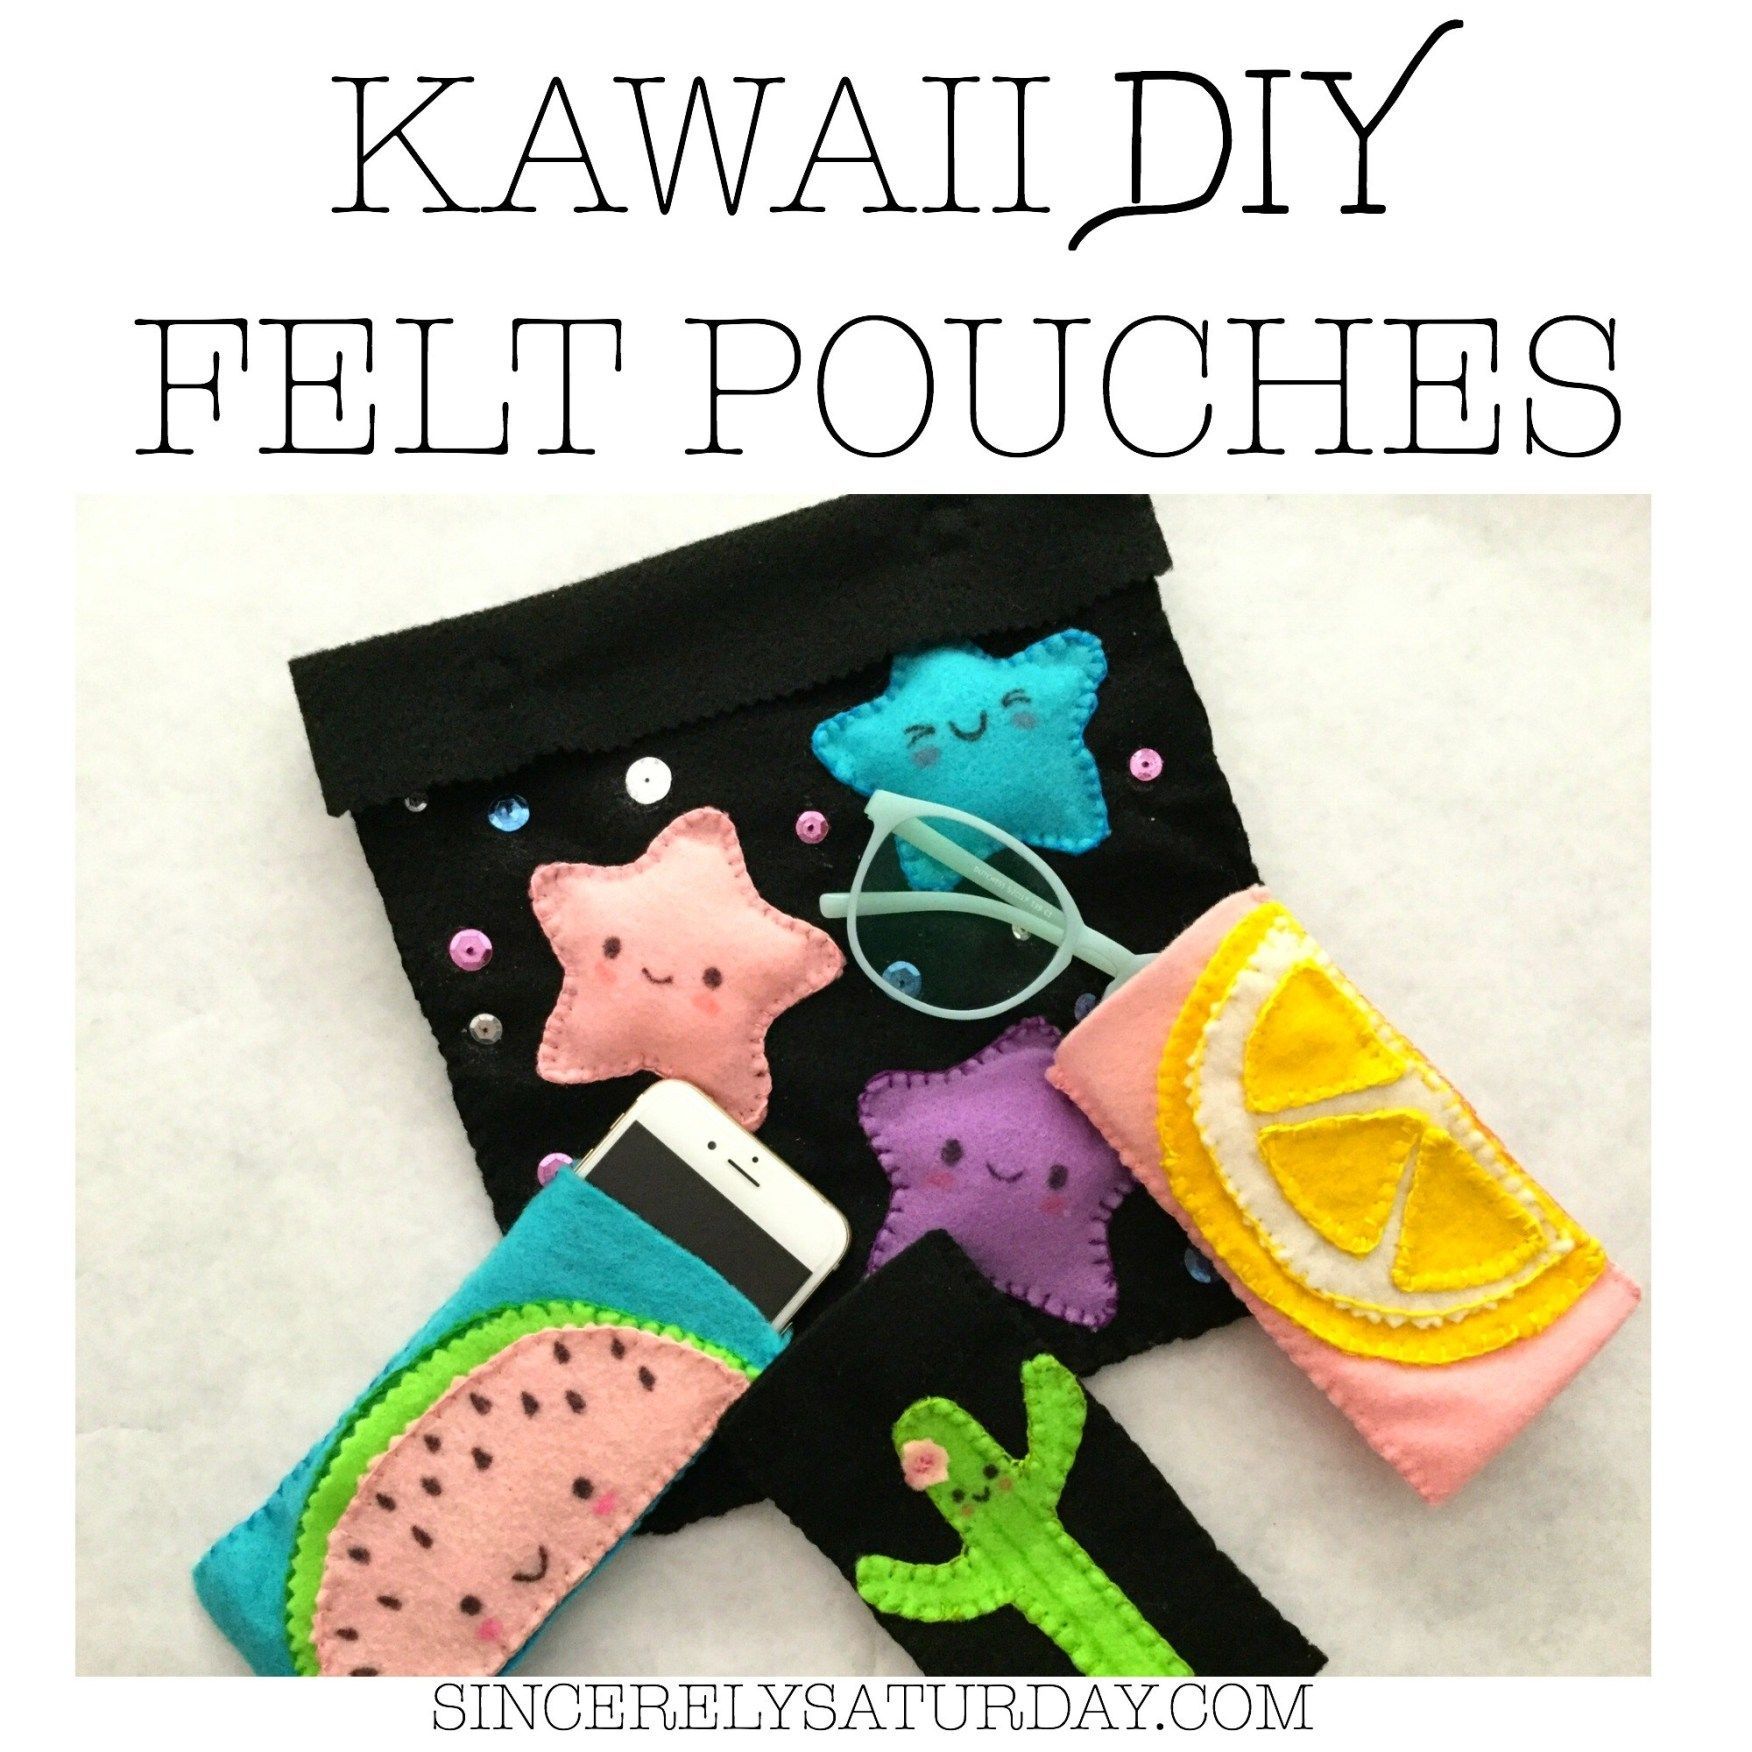 KAWAII DIY FELT POUCHES- Cute, fun and easy | Sincerely Saturday - KAWAII DIY FELT POUCHES- Cute, fun and easy | Sincerely Saturday -   18 kawaii diy Clothes ideas